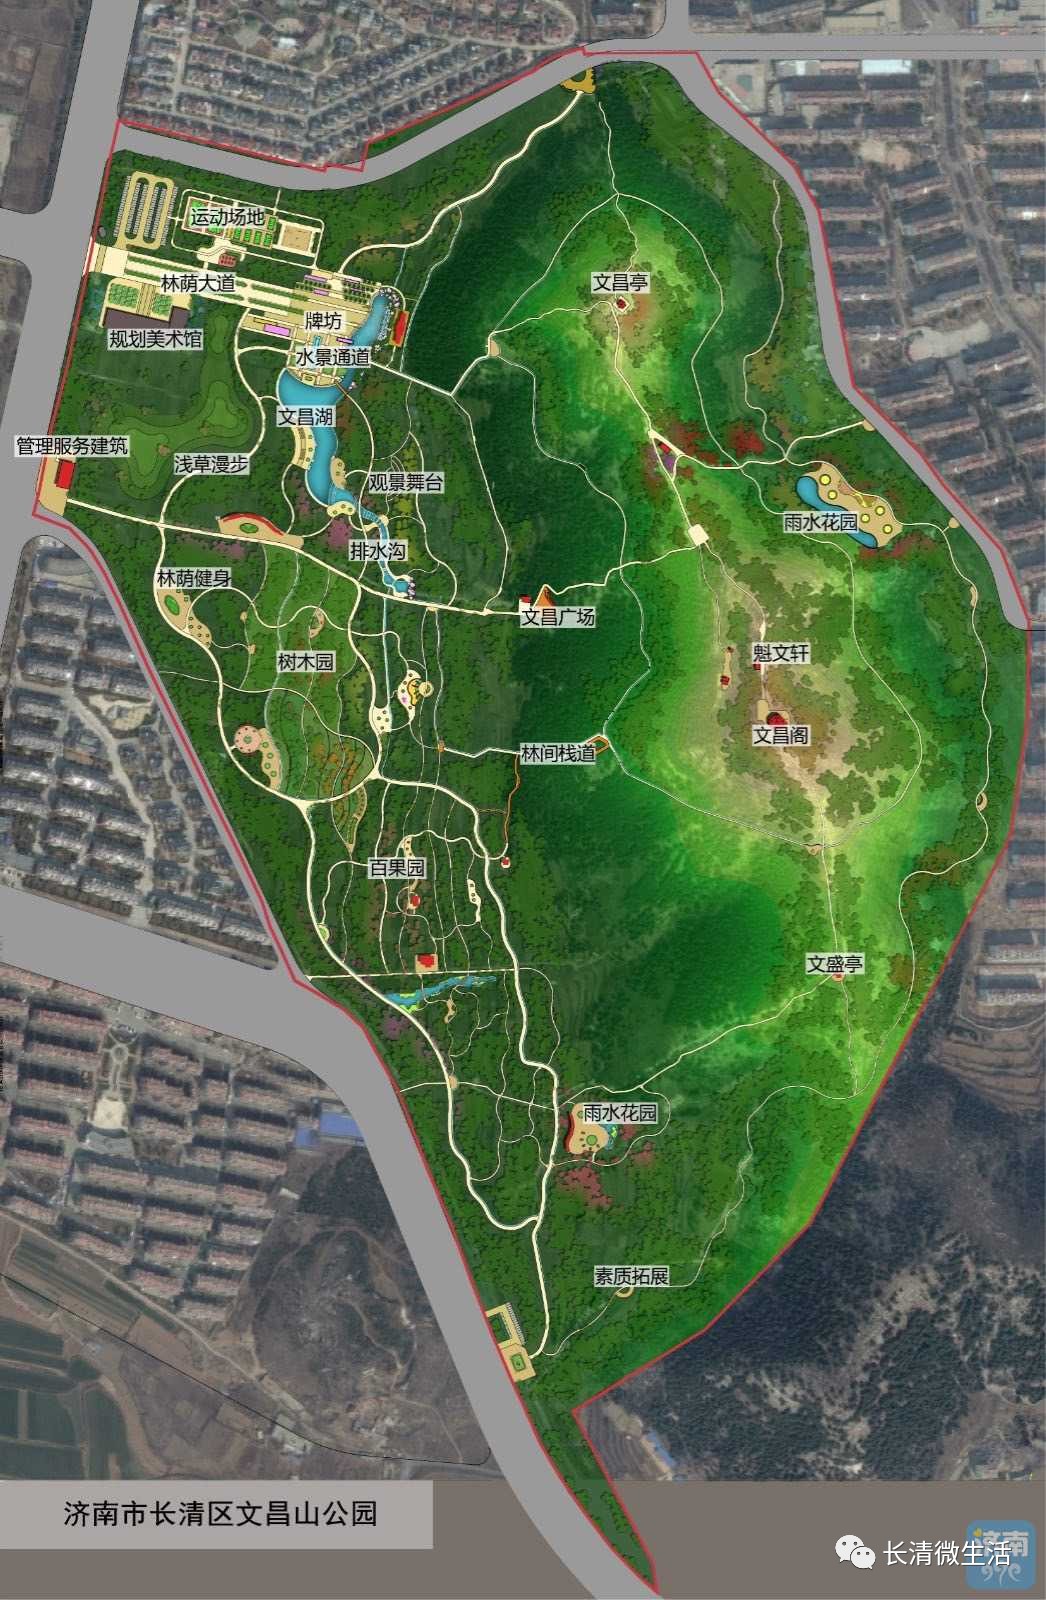 文昌山公园最终效果图今天曝光,总面积92万余平米.